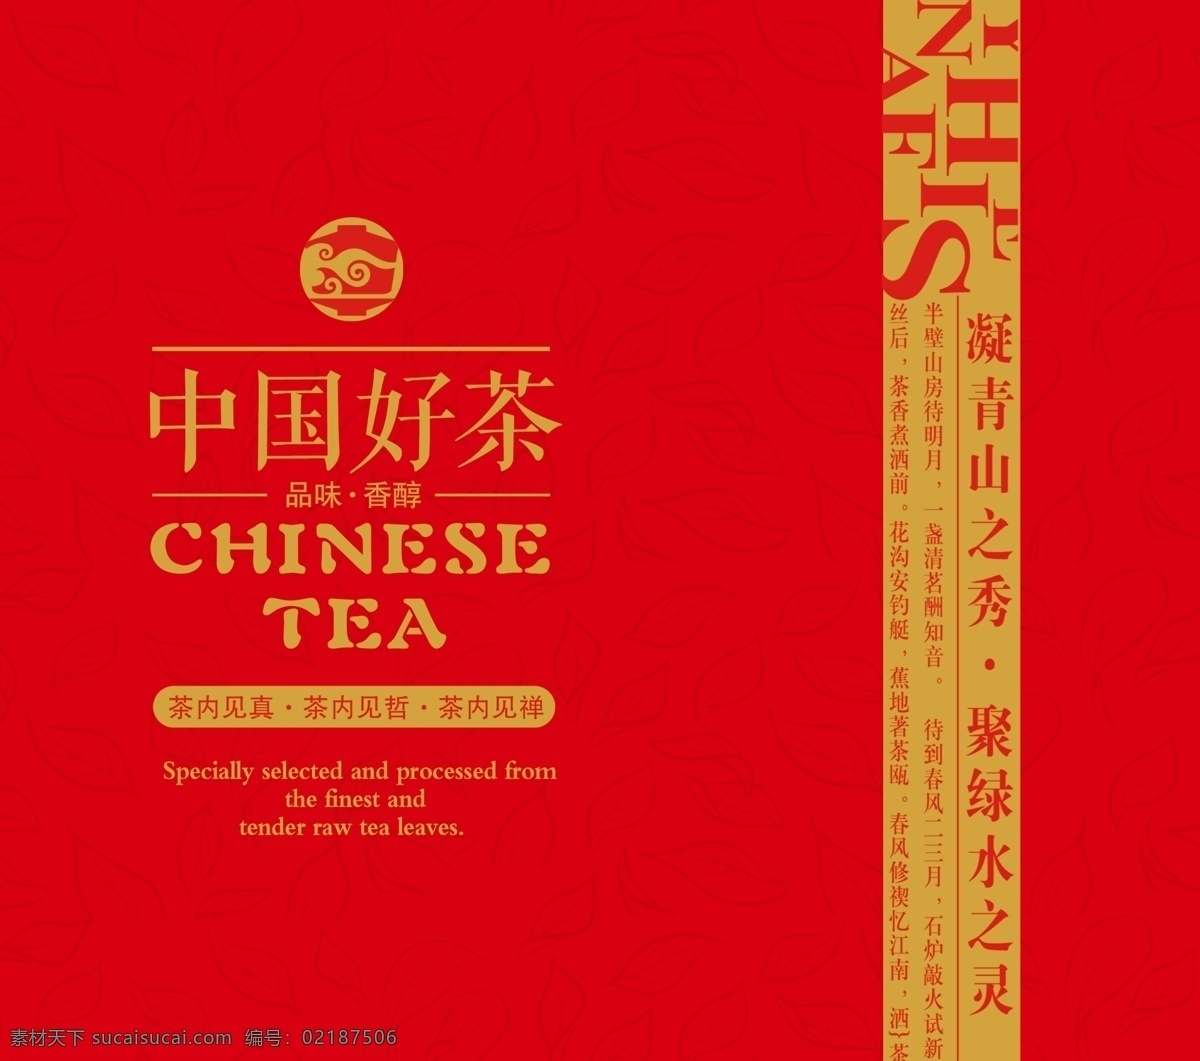 茶叶罐 铁罐 铁盒 茶包装 茶叶包装设计 中国风 茶叶礼盒 礼盒 包装素材 简易盒包装 广告设计模板 源文件 红色